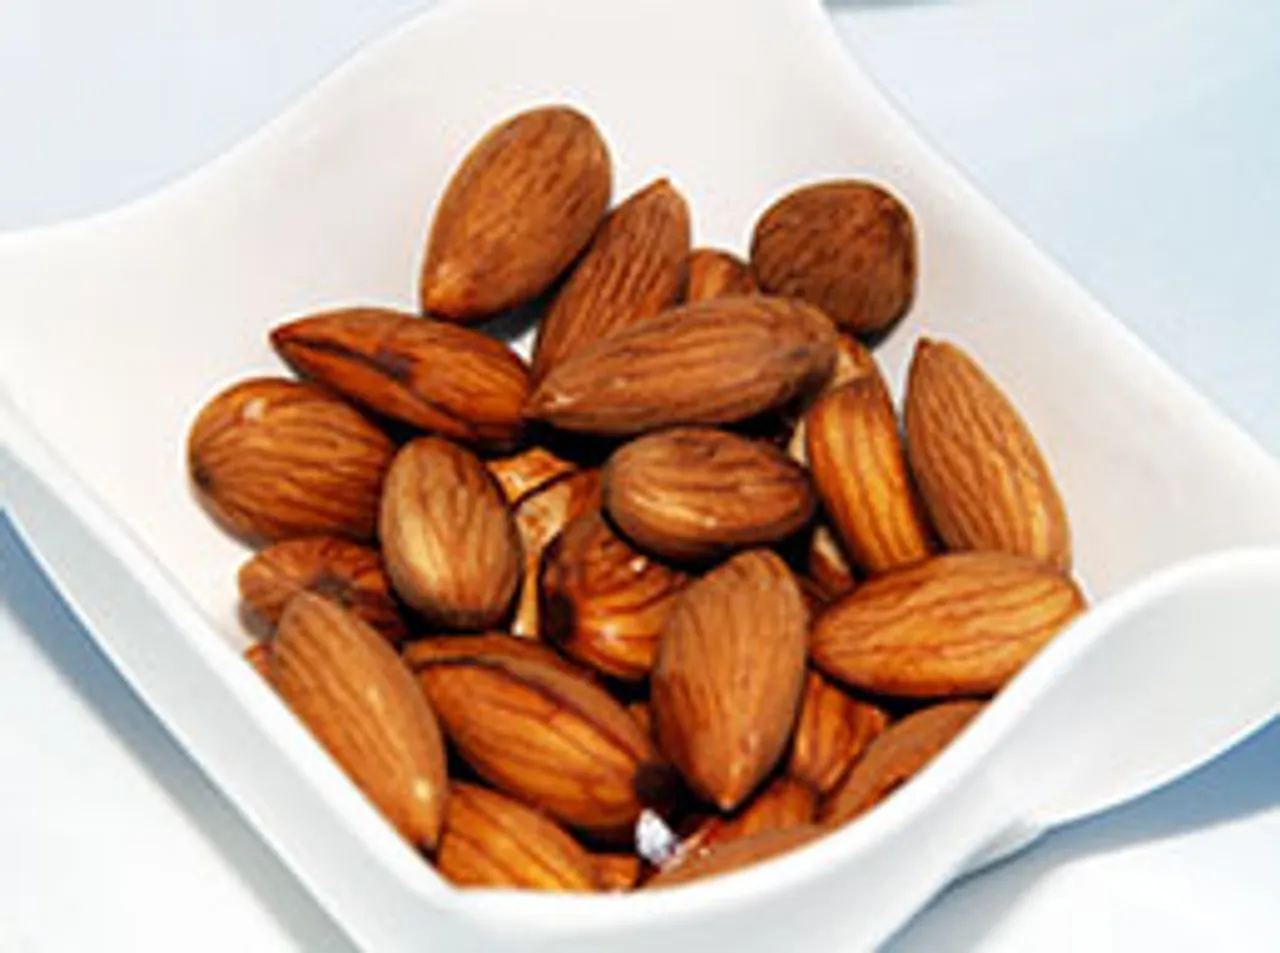 Almonds a nut amongst nuts